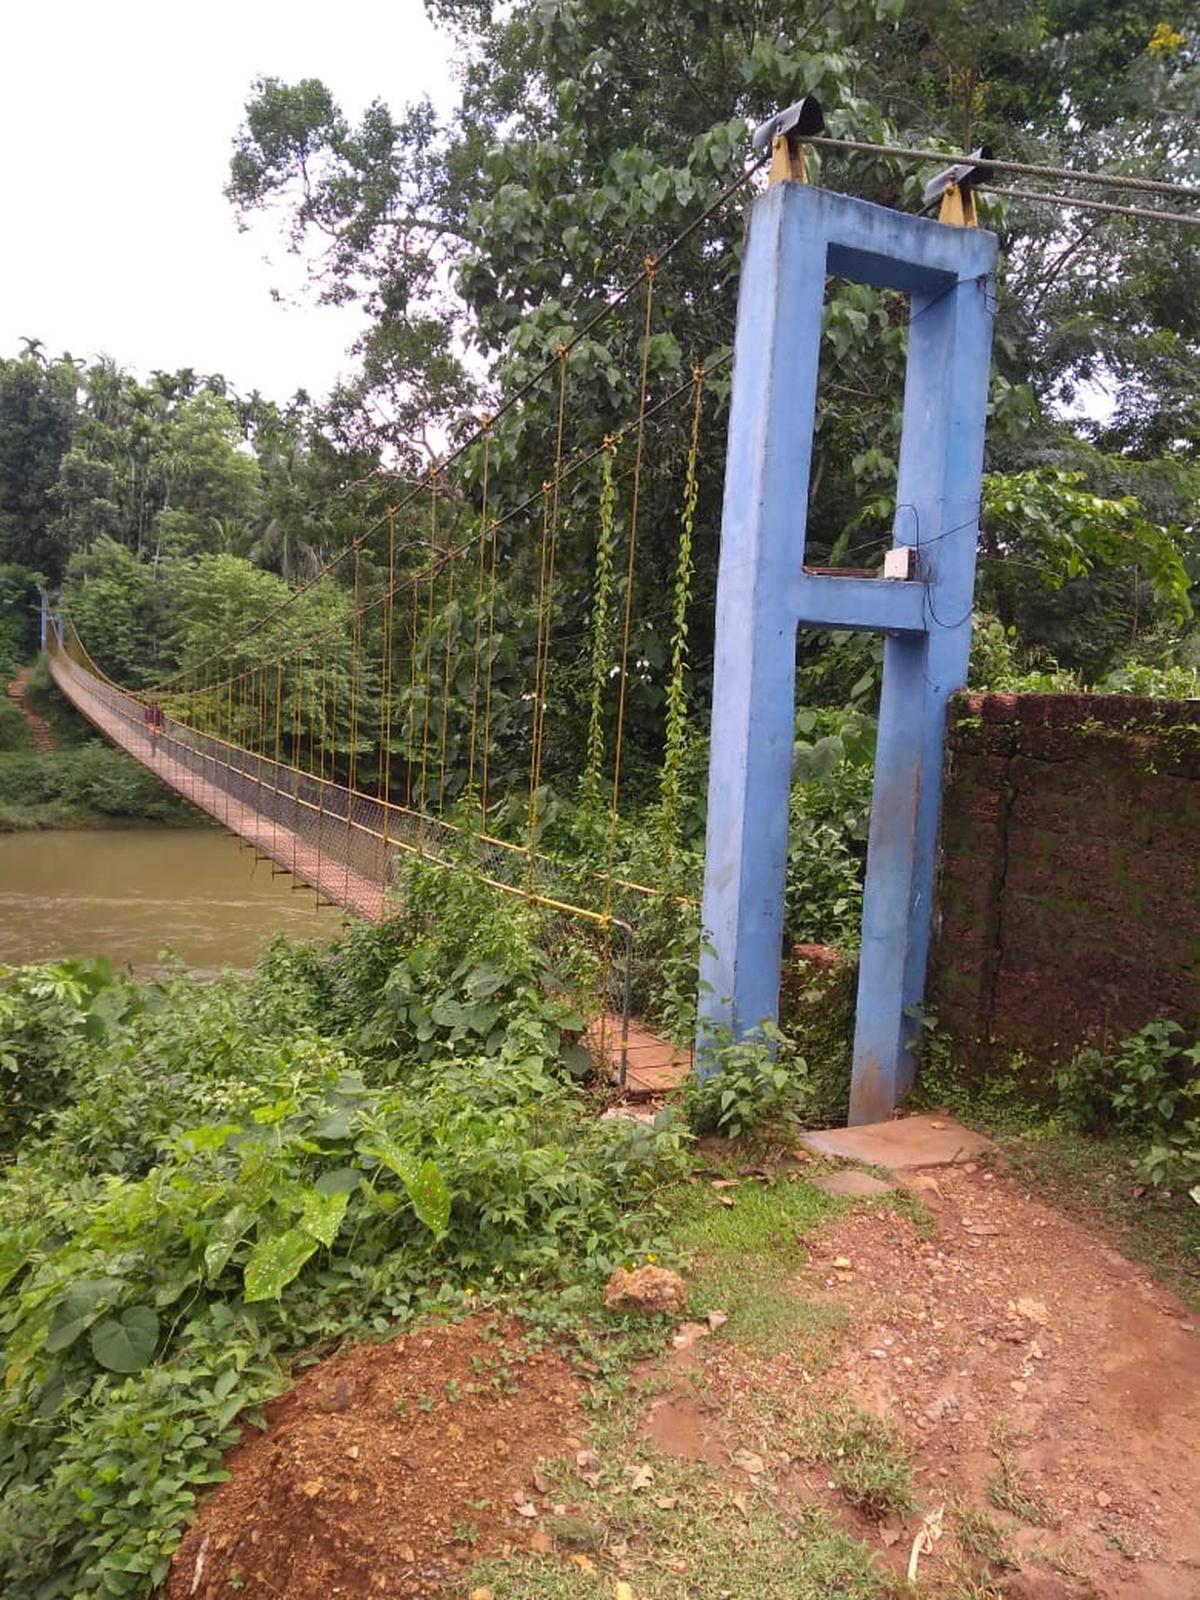 Movement of people banned on Konanur-Kattepura hanging bridge in Arakalgud taluk of Karnataka